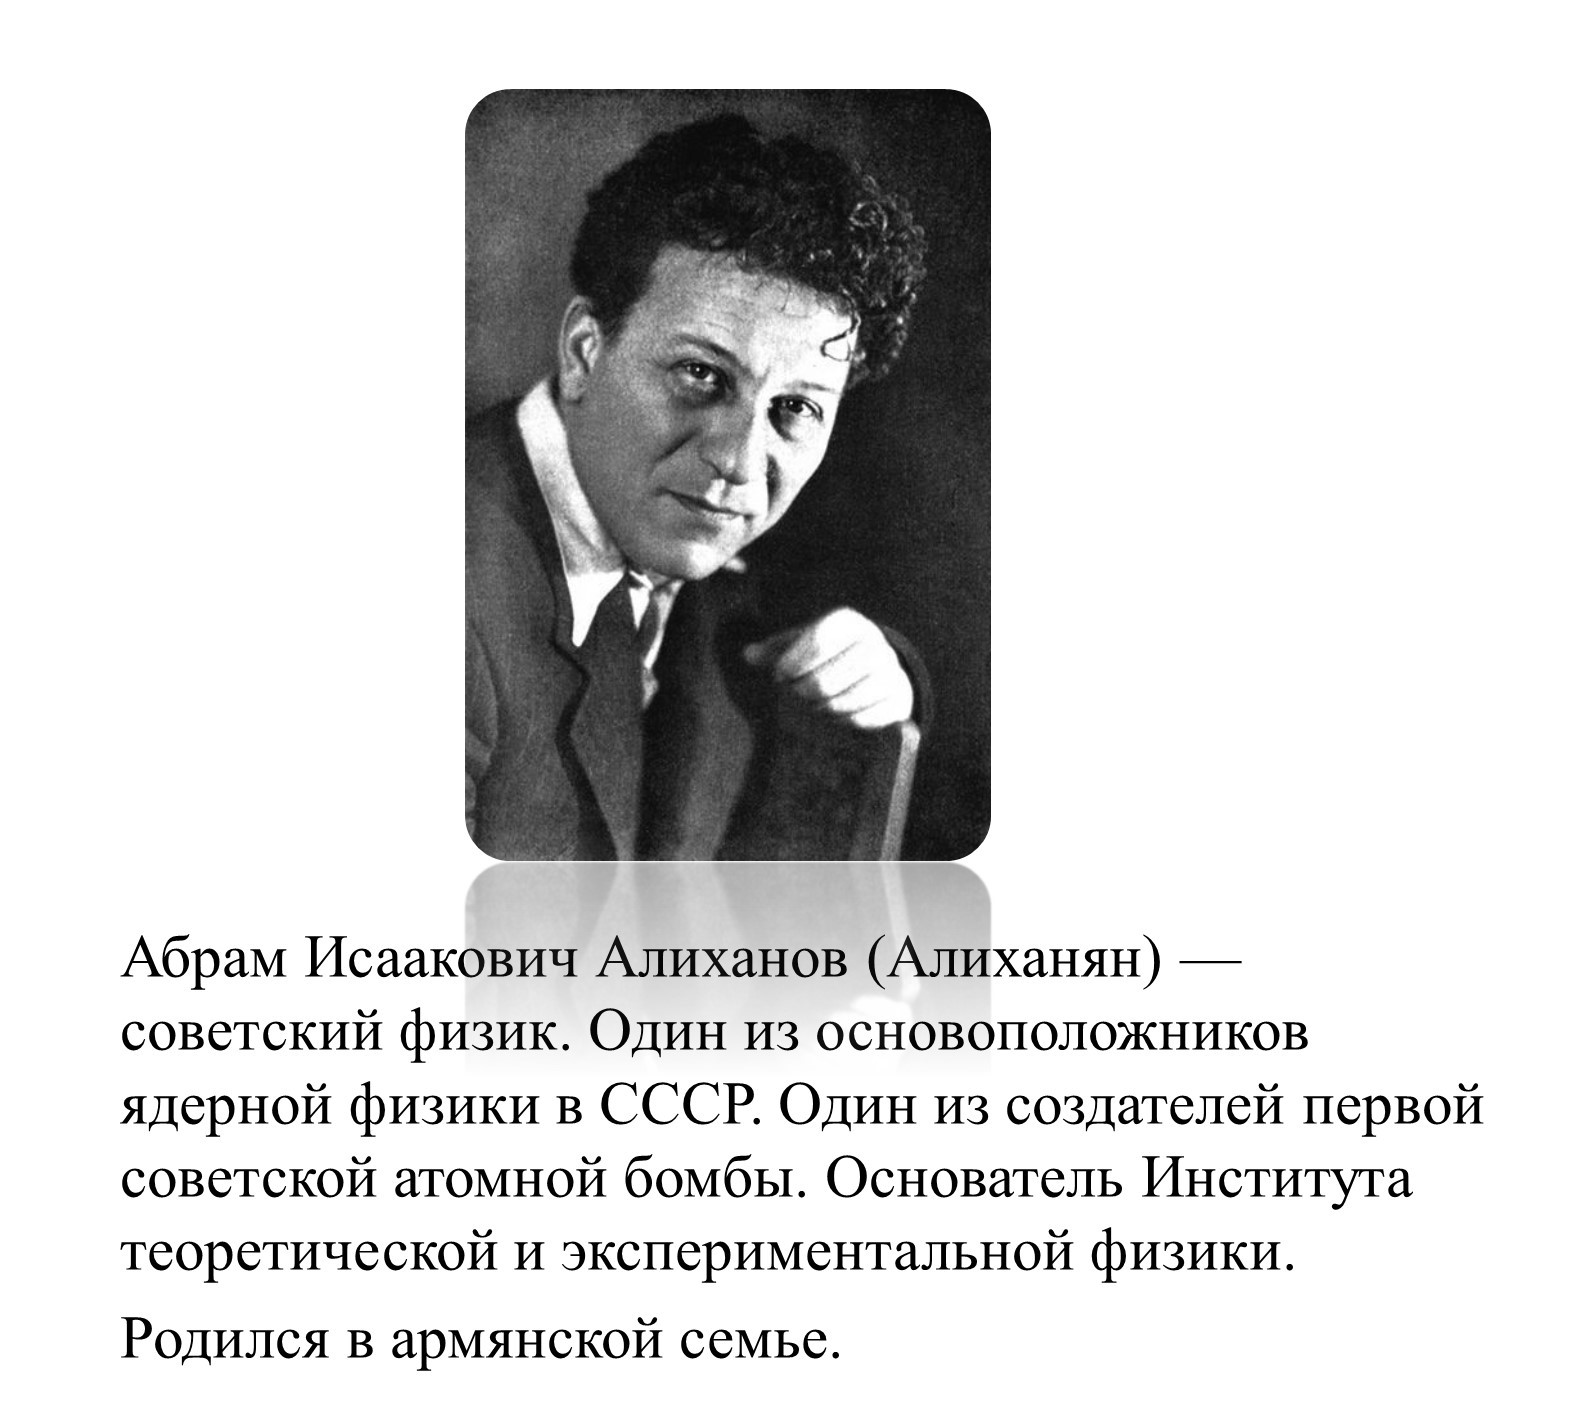 Алиханян Абрам Исаакович